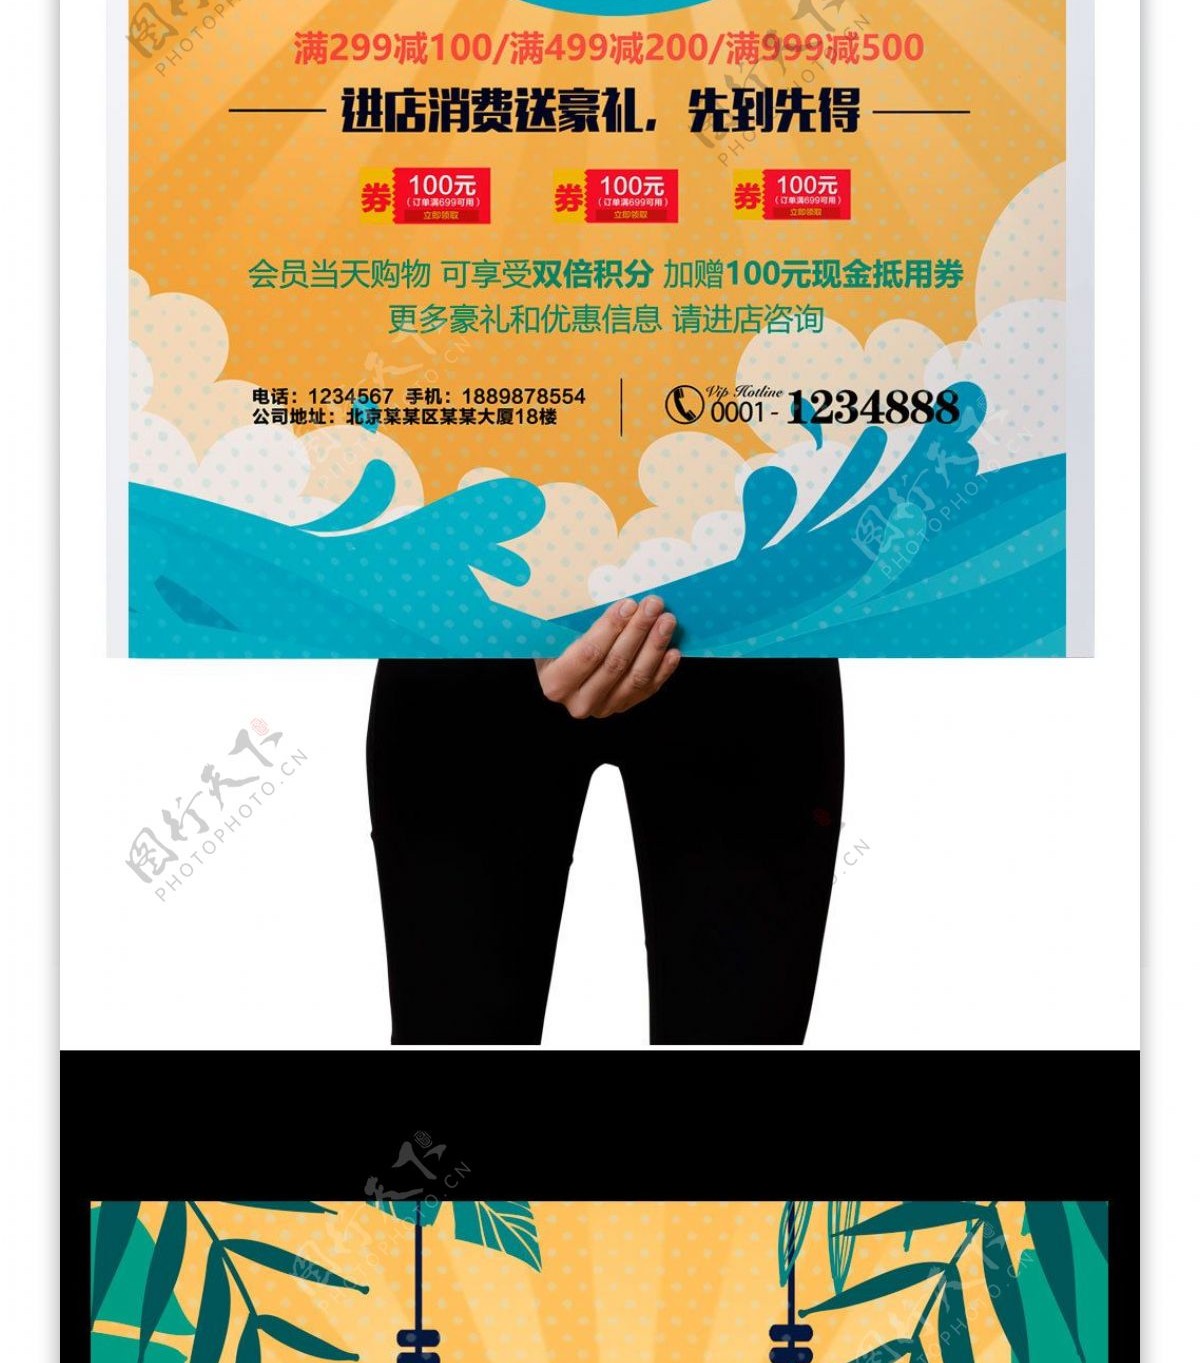 2017黄色创意夏日促销打折海报模版